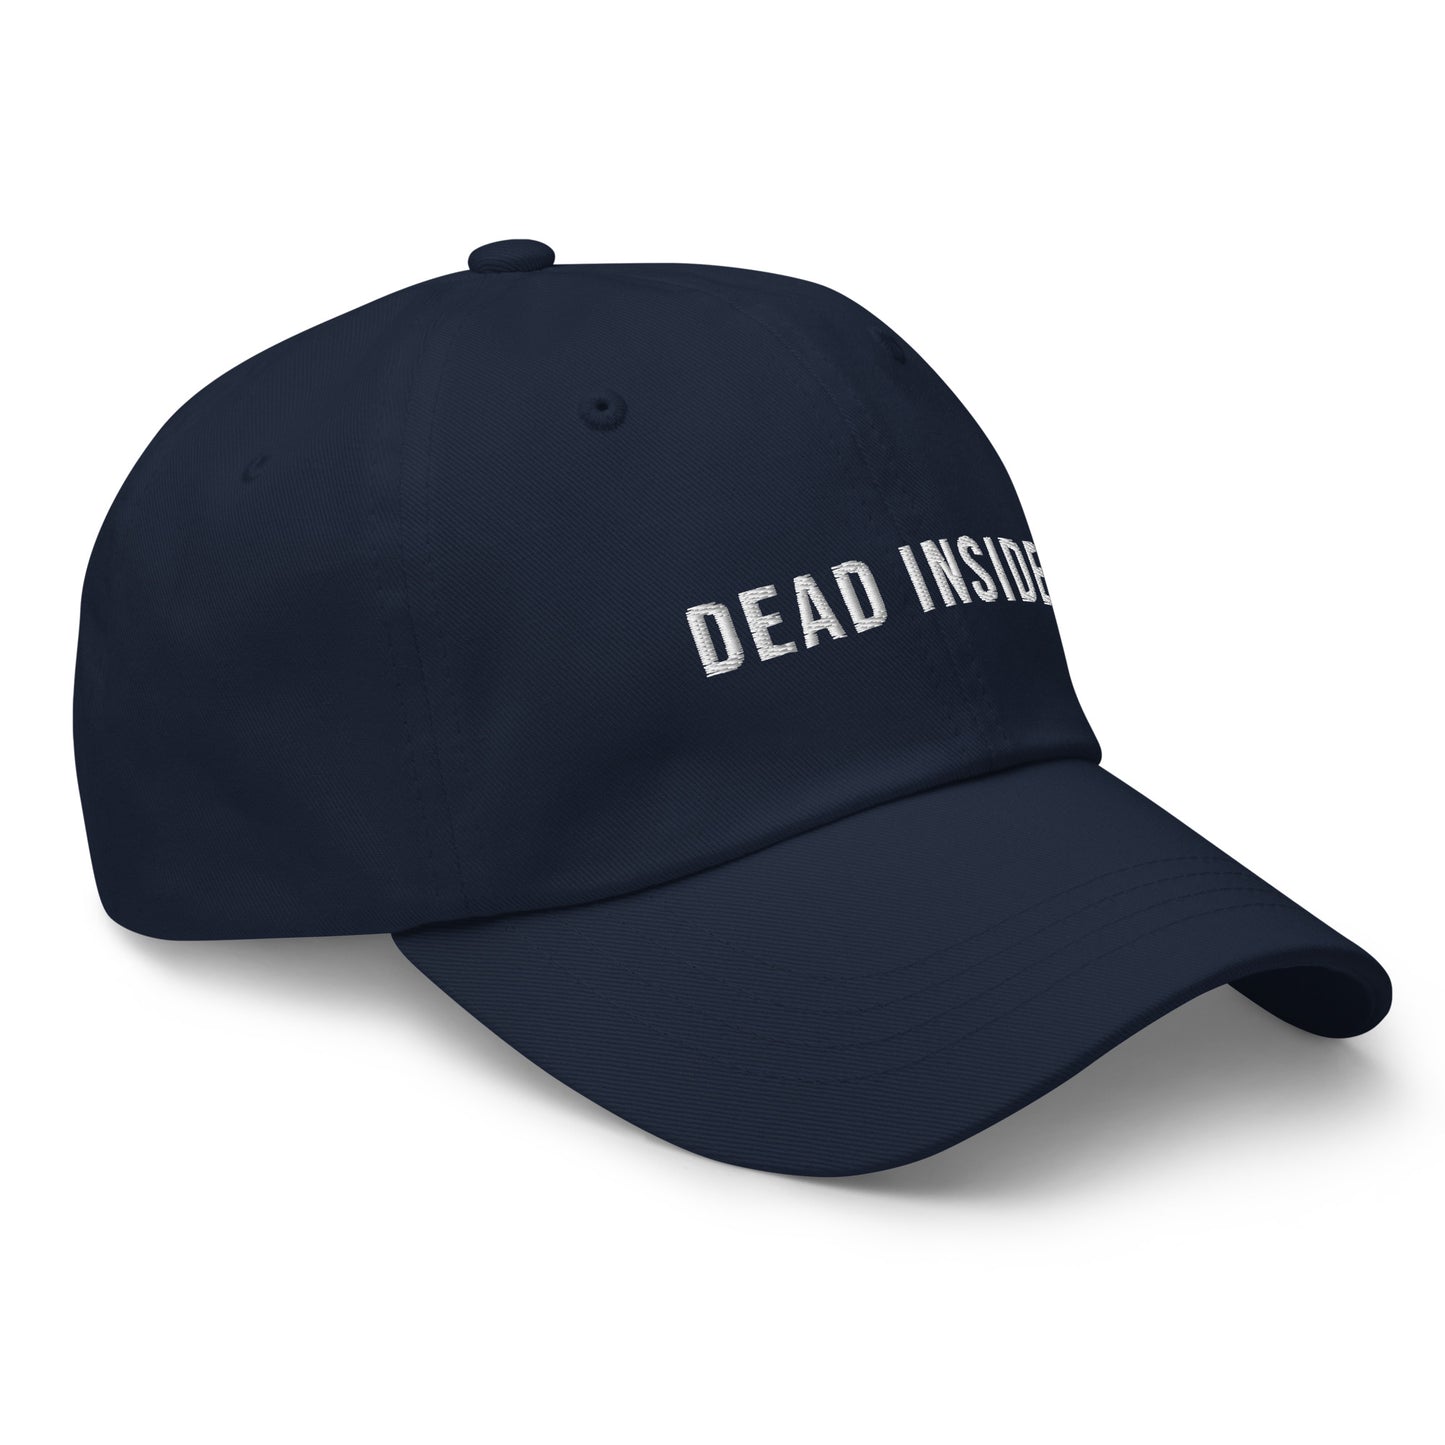 DEAD INSIDE bestickte Baseball-Cap auf weißem Hintergrund.